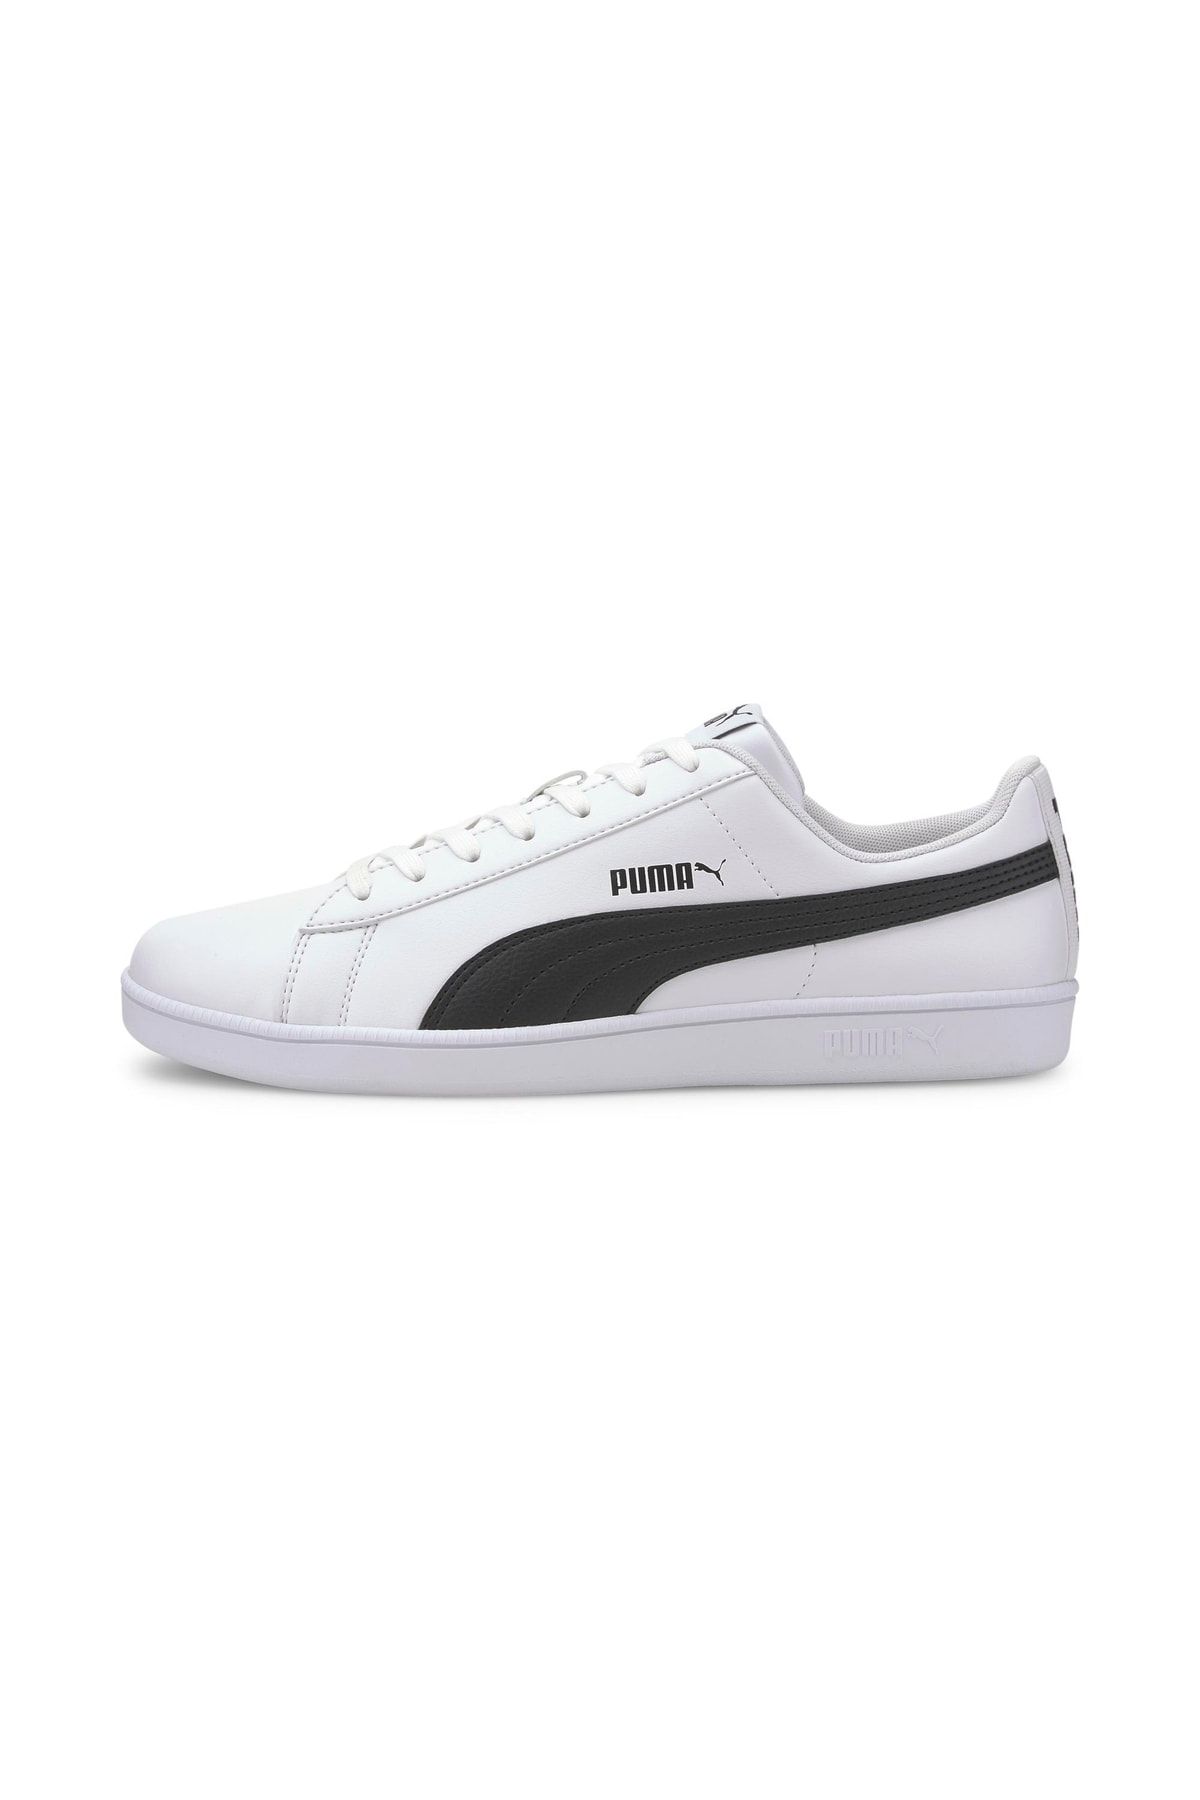 Puma Baseline - Beyaz Unisex Sneaker